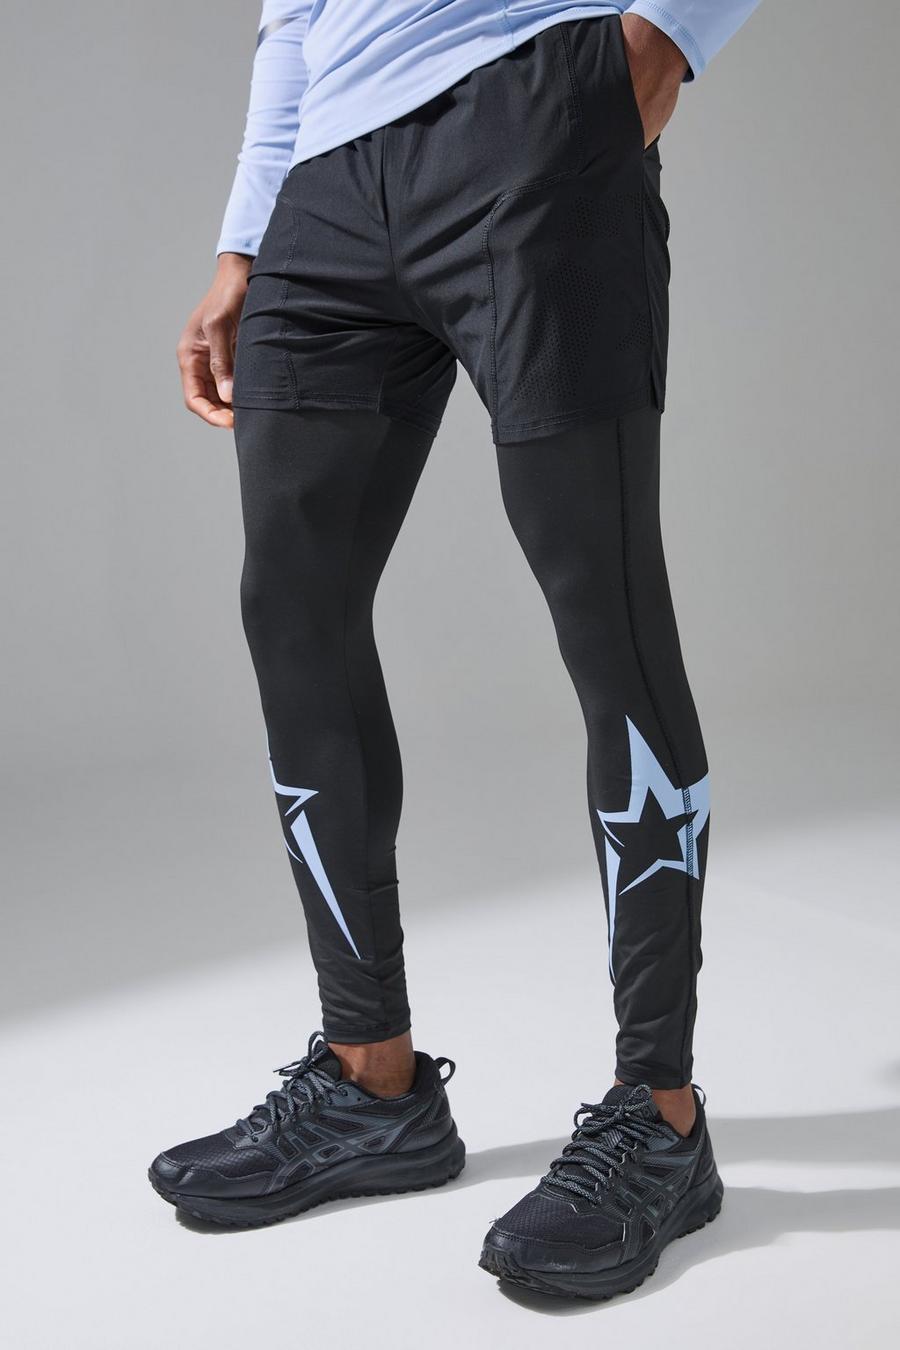 Black Gunna Active Geweven Stretch Shorts (5 Inch)